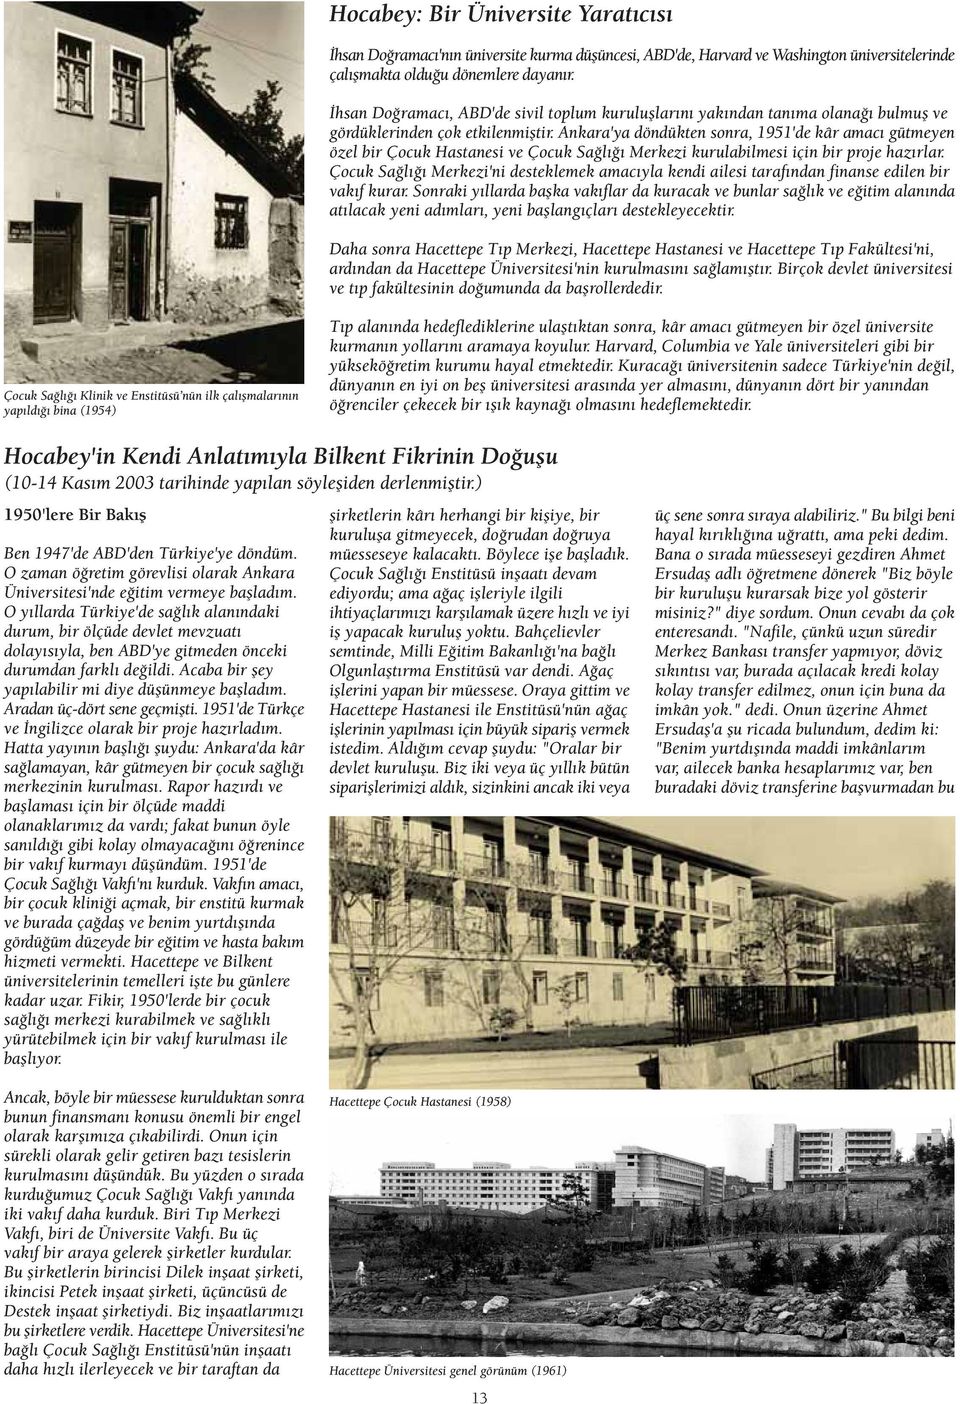 Ankara'ya döndükten sonra, 1951'de kâr amac gütmeyen özel bir Çocuk Hastanesi ve Çocuk Sa l Merkezi kurulabilmesi için bir proje haz rlar.